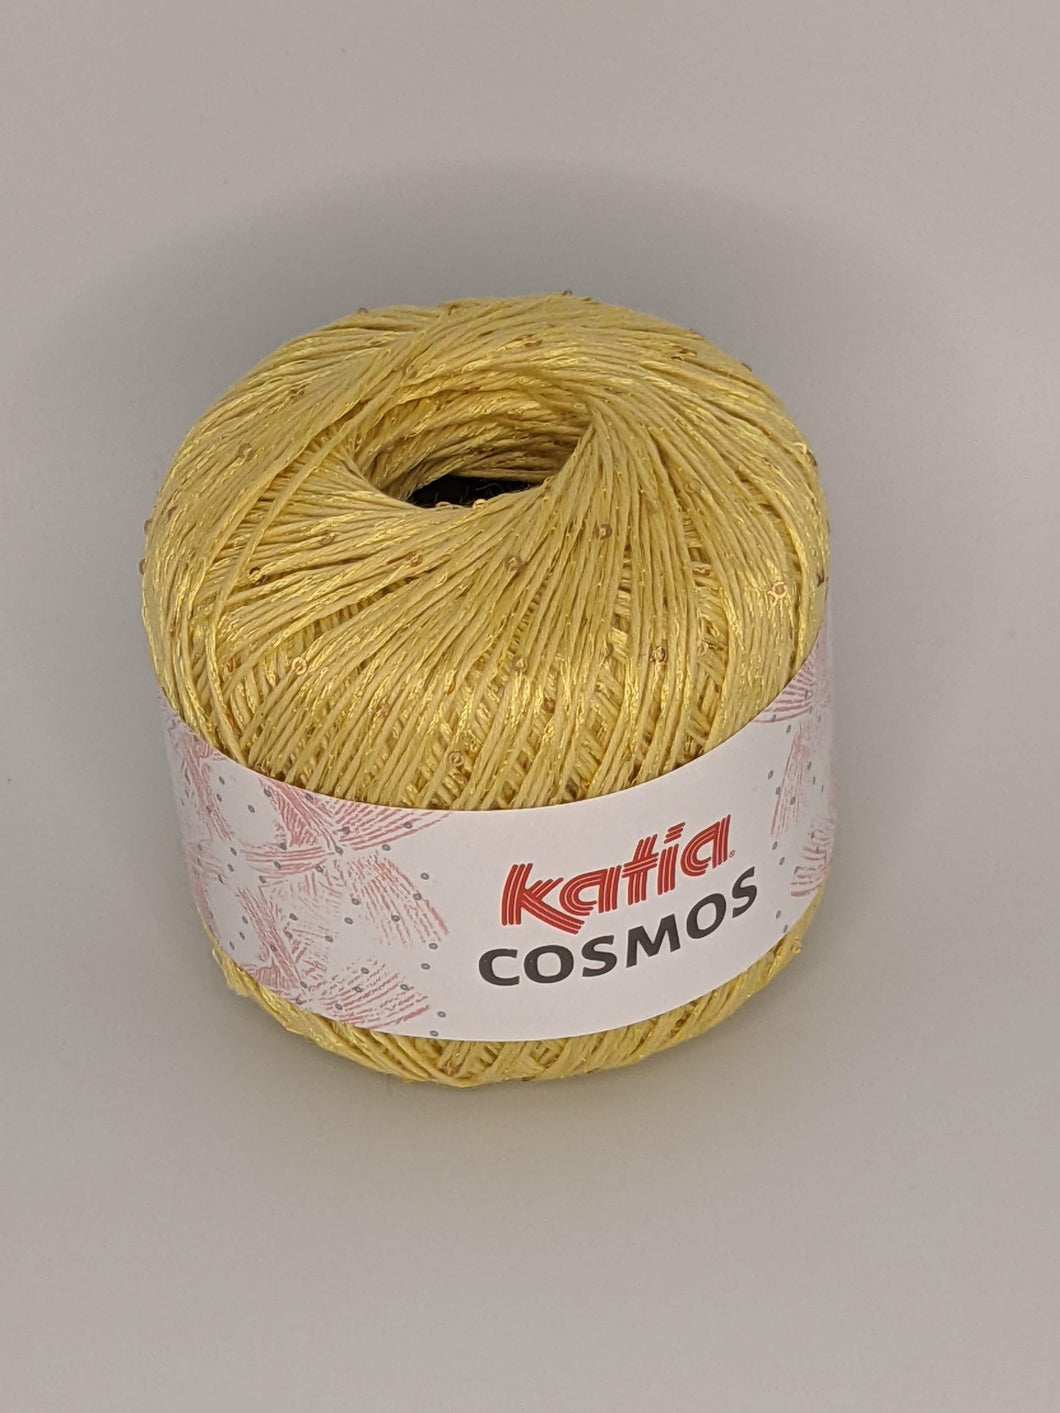 Katia Cosmos